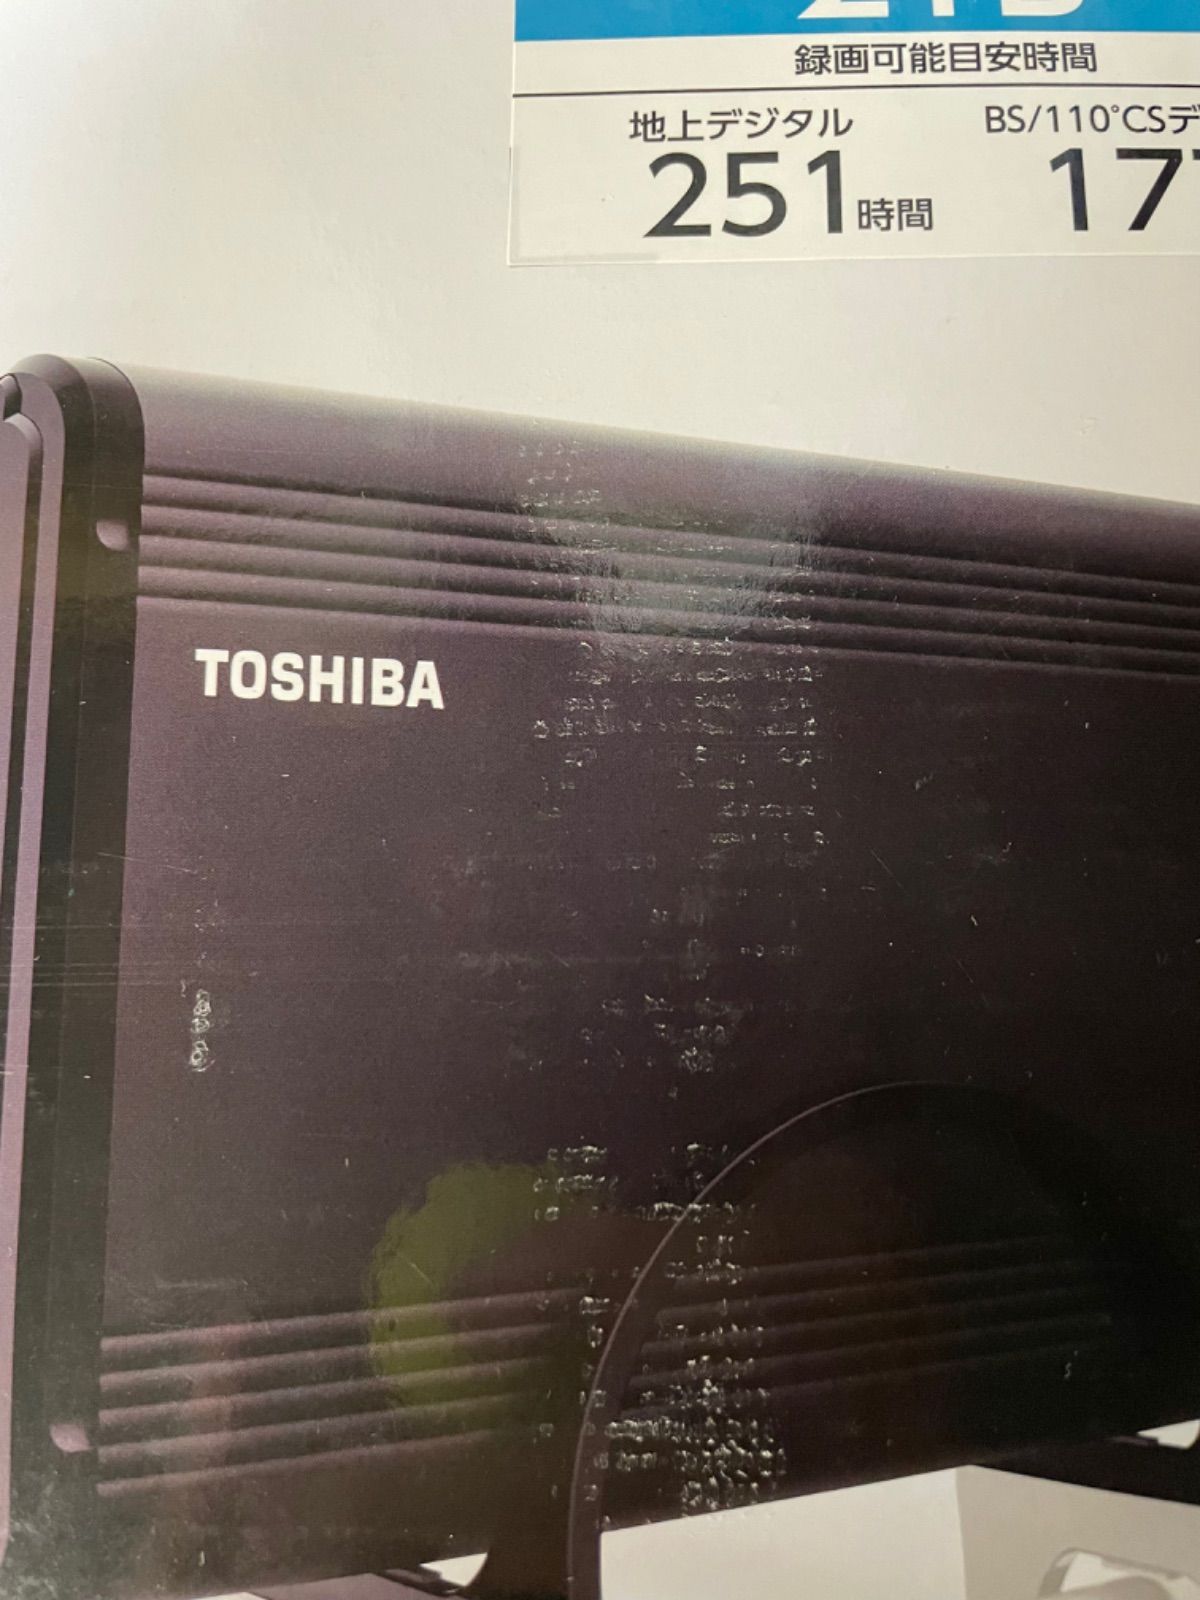 東芝 USBハードディスク 2TB TOSHIBA THD-200V3 - エメリーマート